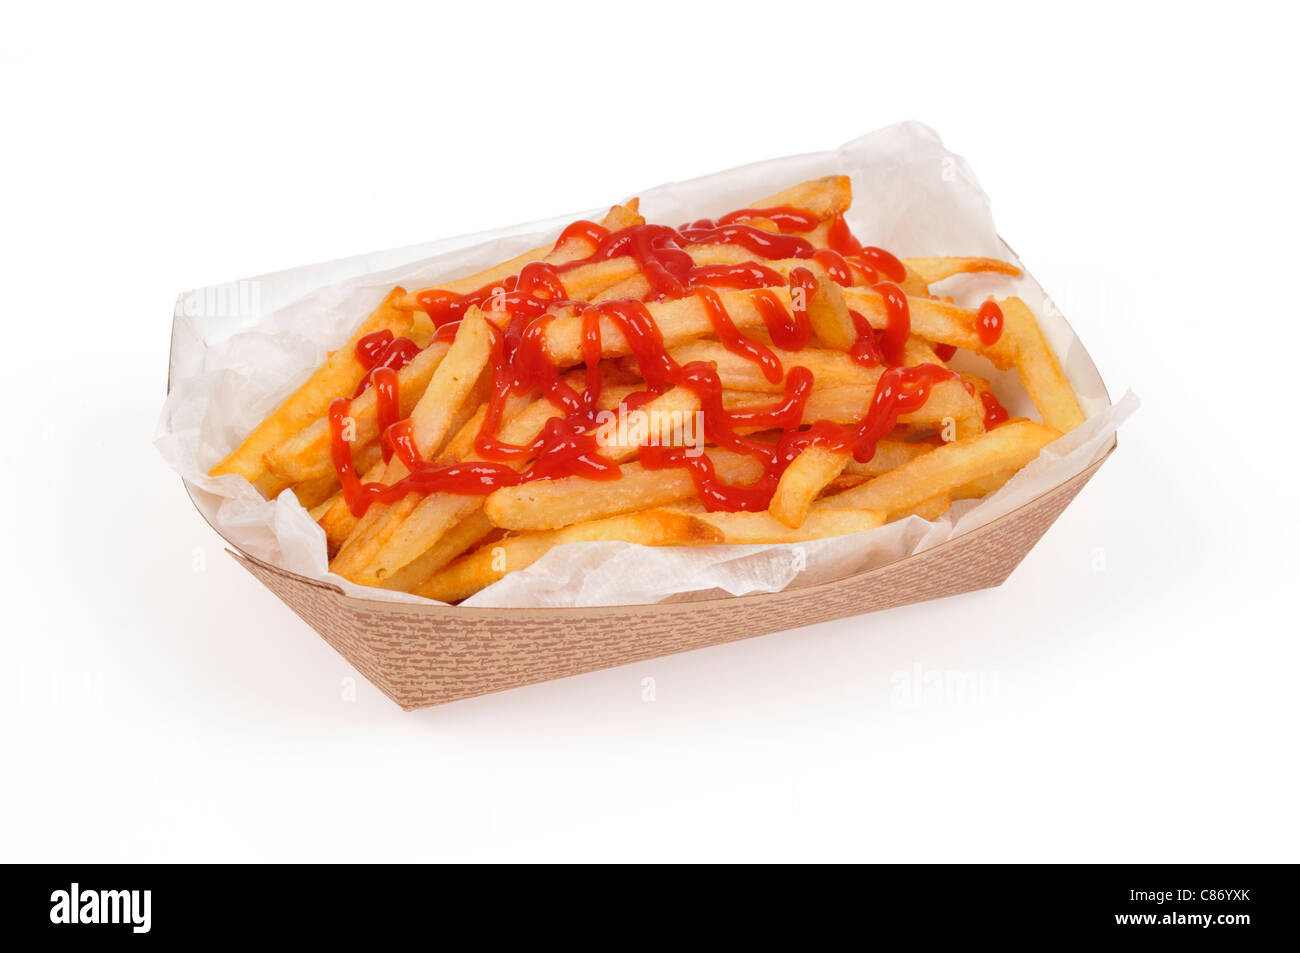 Cesta de papel de llevar las patatas fritas o patatas fritas con salsa de tomate sobre ellas, sobre fondo blanco, corte. Foto de stock